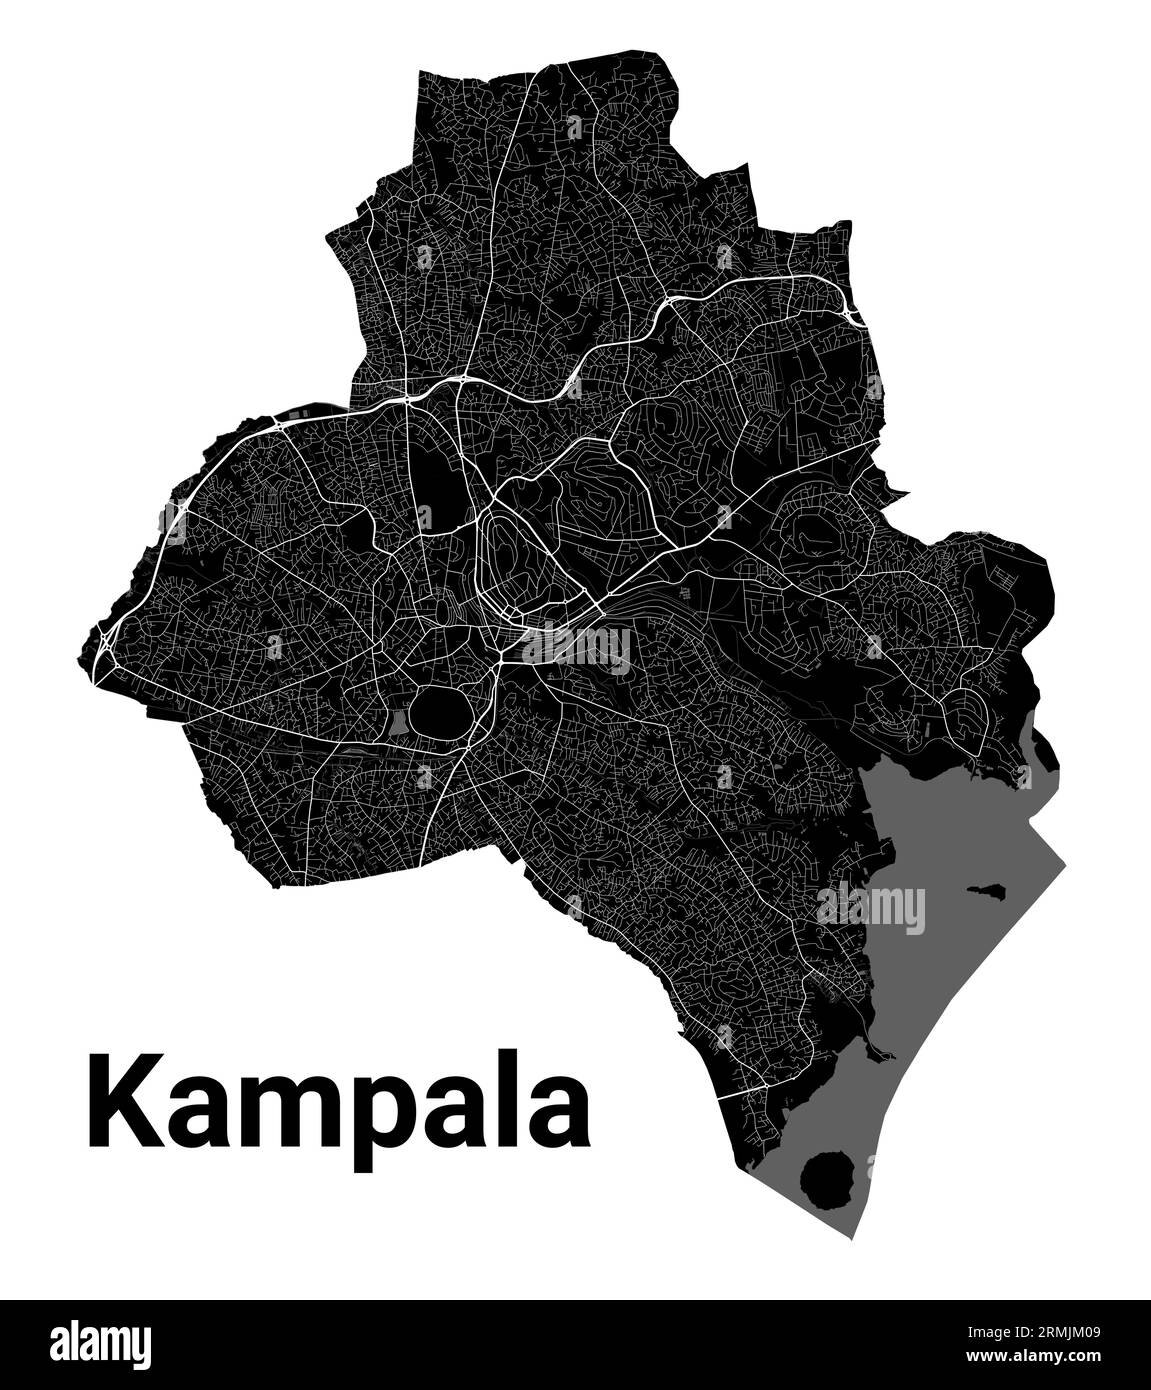 Kampala, mappa dell'Uganda. Mappa nera dettagliata dell'area amministrativa della città di Kampala. Vista sull'aria metropolitana con poster del paesaggio urbano. Terra nera con strade bianche e. Illustrazione Vettoriale